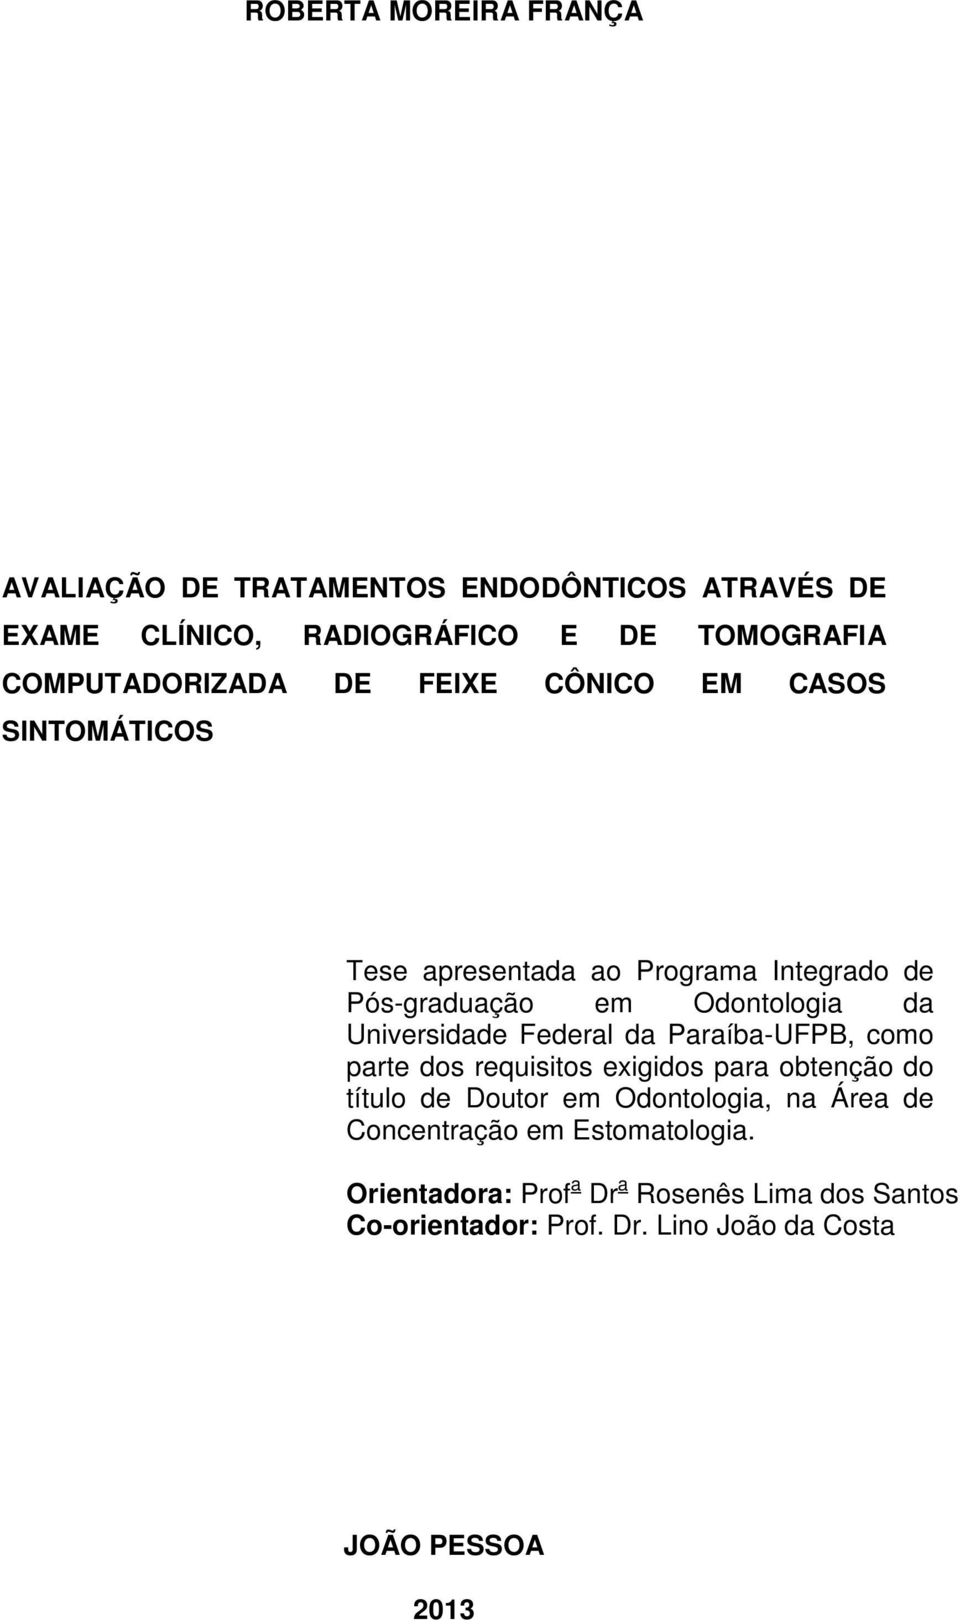 Universidade Federal da Paraíba-UFPB, como parte dos requisitos exigidos para obtenção do título de Doutor em Odontologia, na